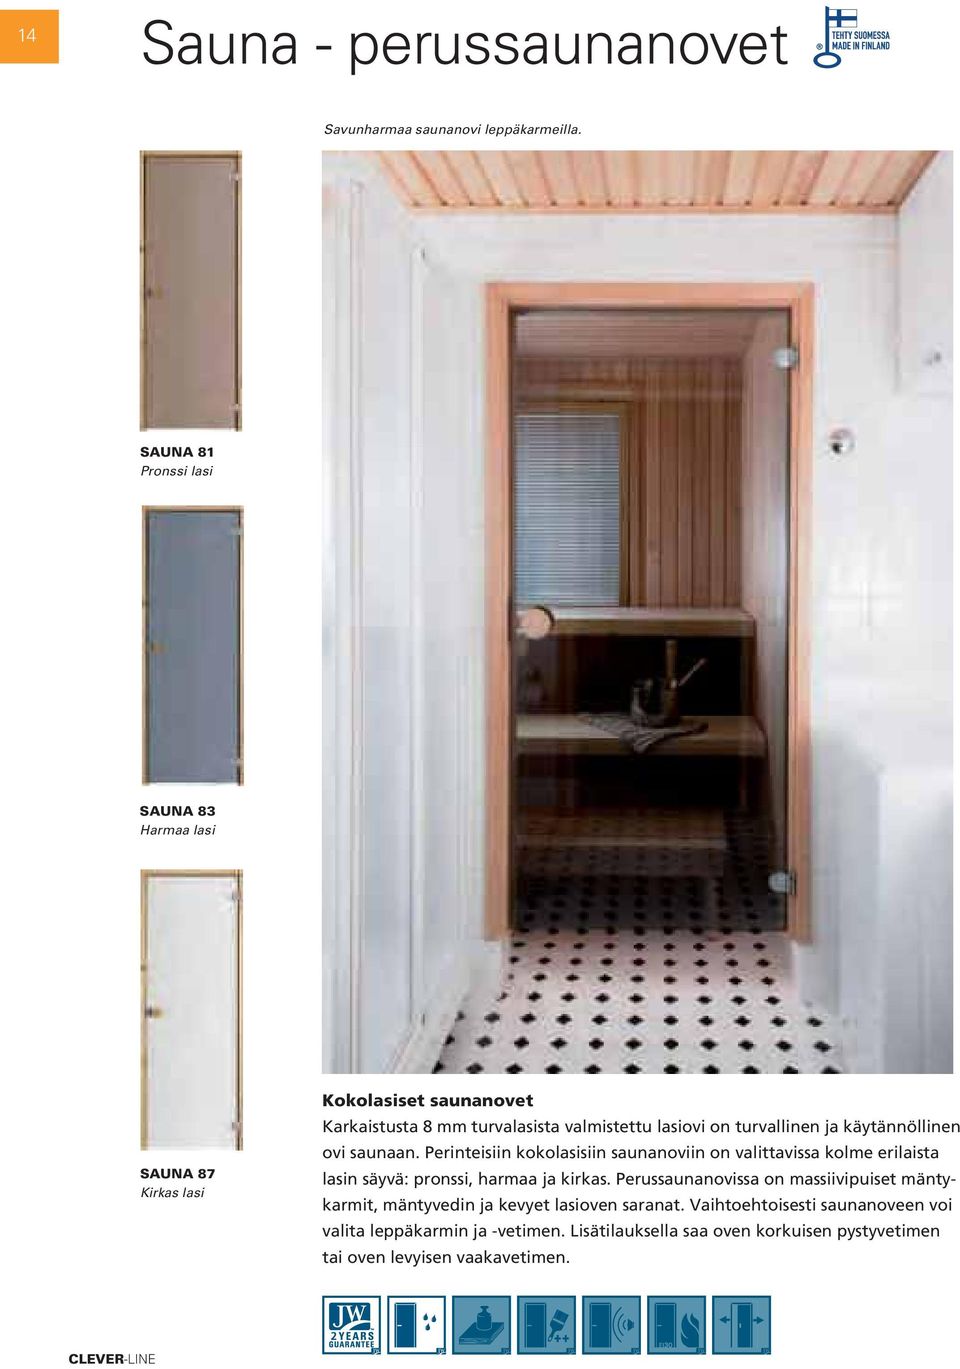 turvallinen ja käytännöllinen ovi saunaan. Perinteisiin kokolasisiin saunanoviin on valittavissa kolme erilaista lasin säyvä: pronssi, harmaa ja kirkas.